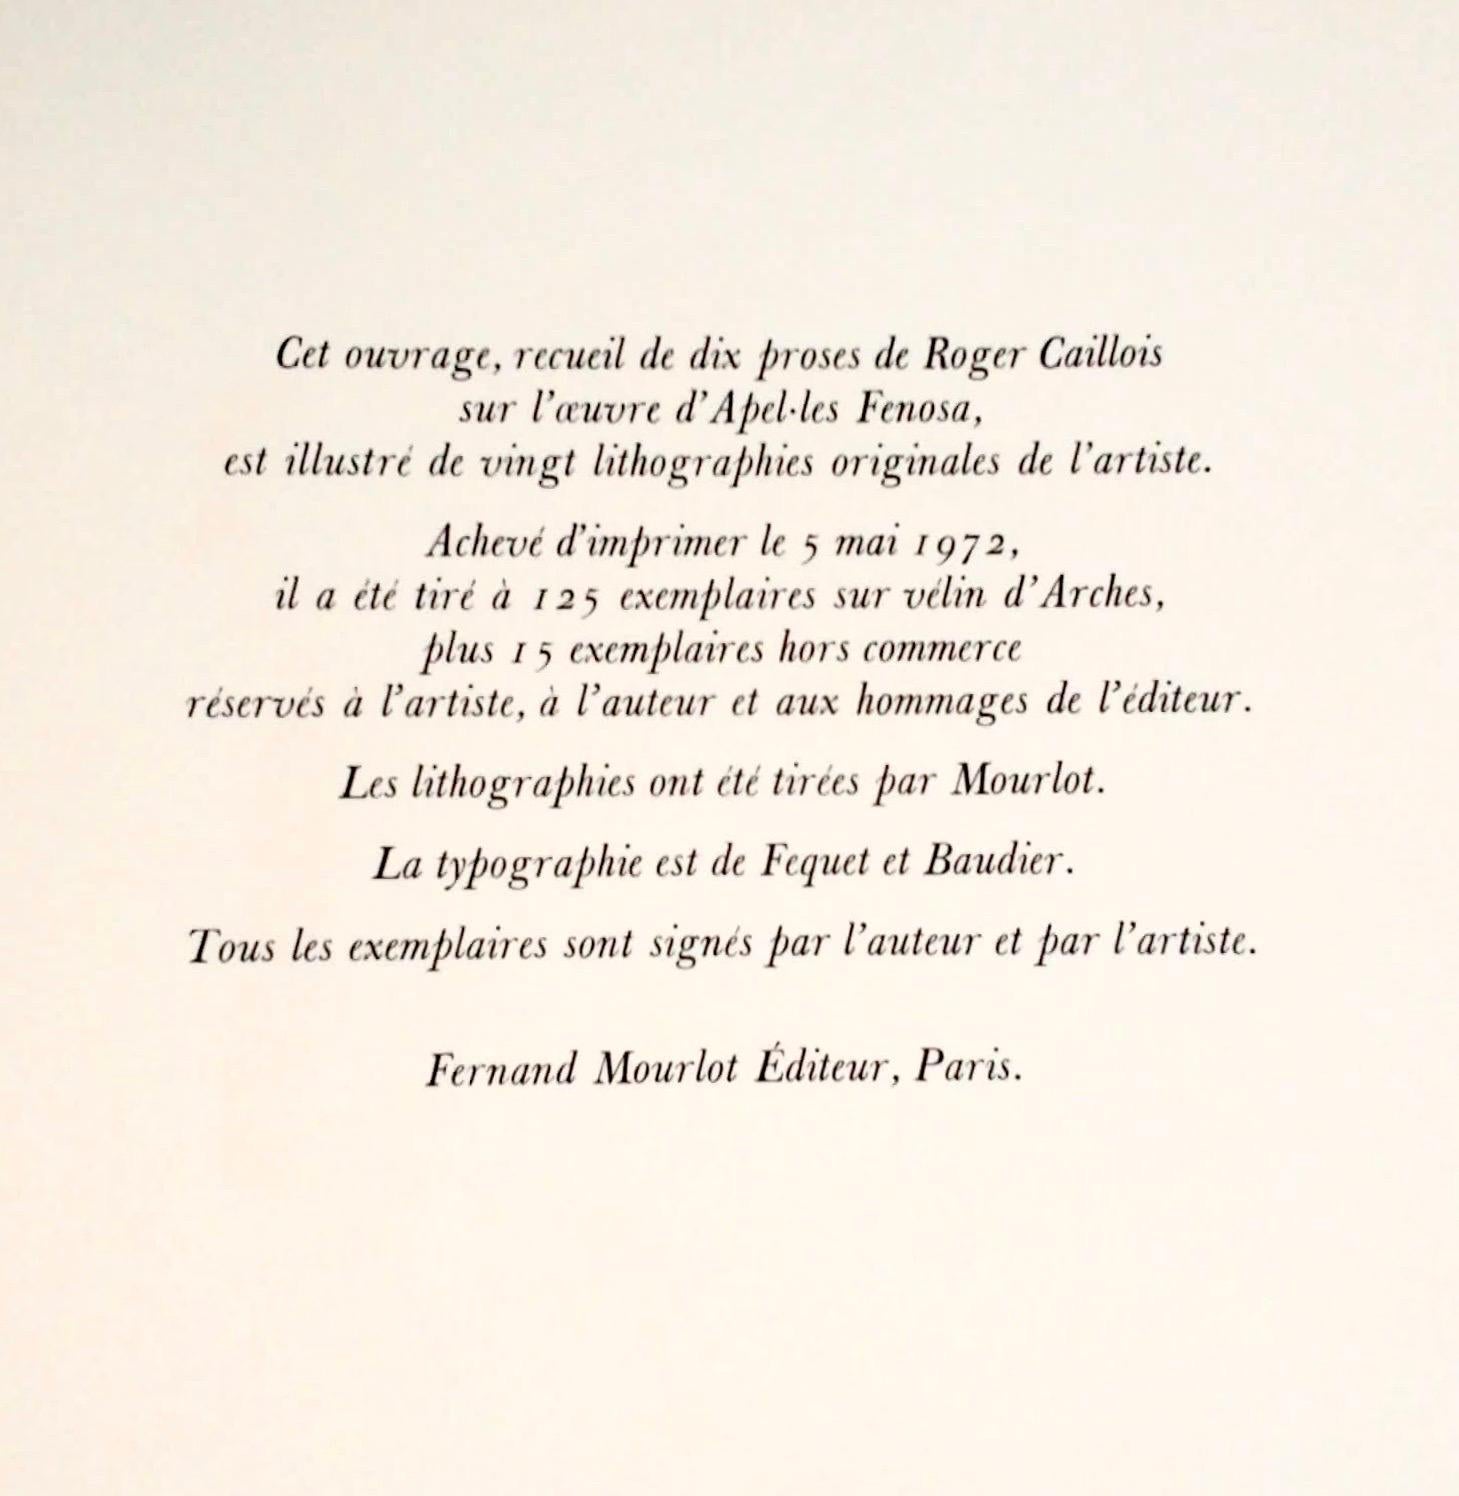 Apeles Fenosa, sculpteur espagnol Mourlot, lithographie - Figures expressionnistes abstraites - Expressionniste Print par Apelles Fenosa